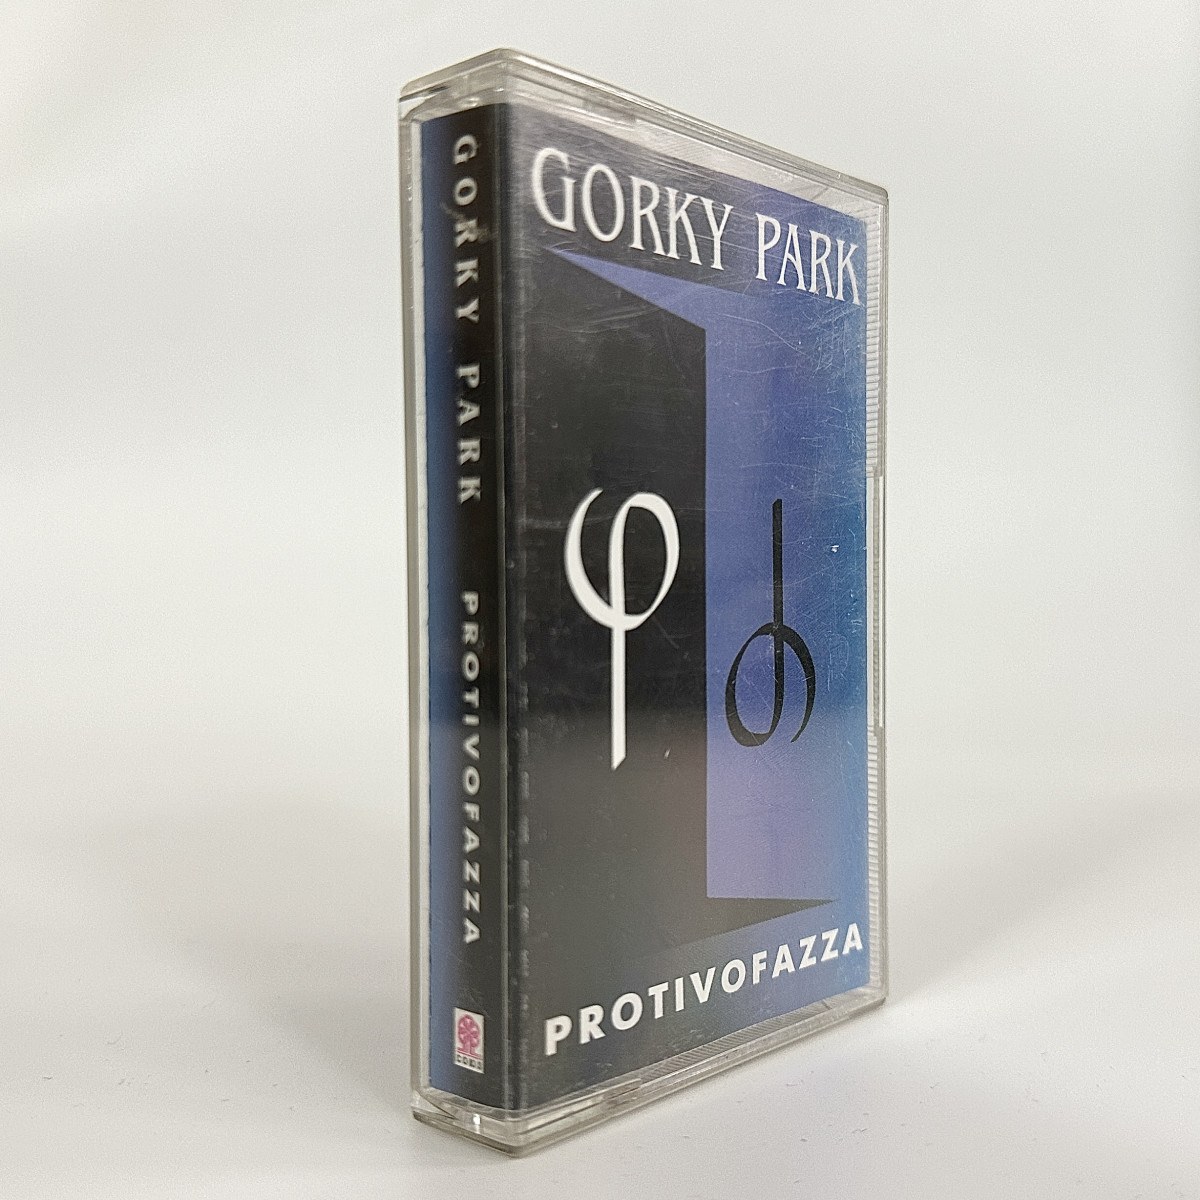 Gorky Park – Protivofazza фото